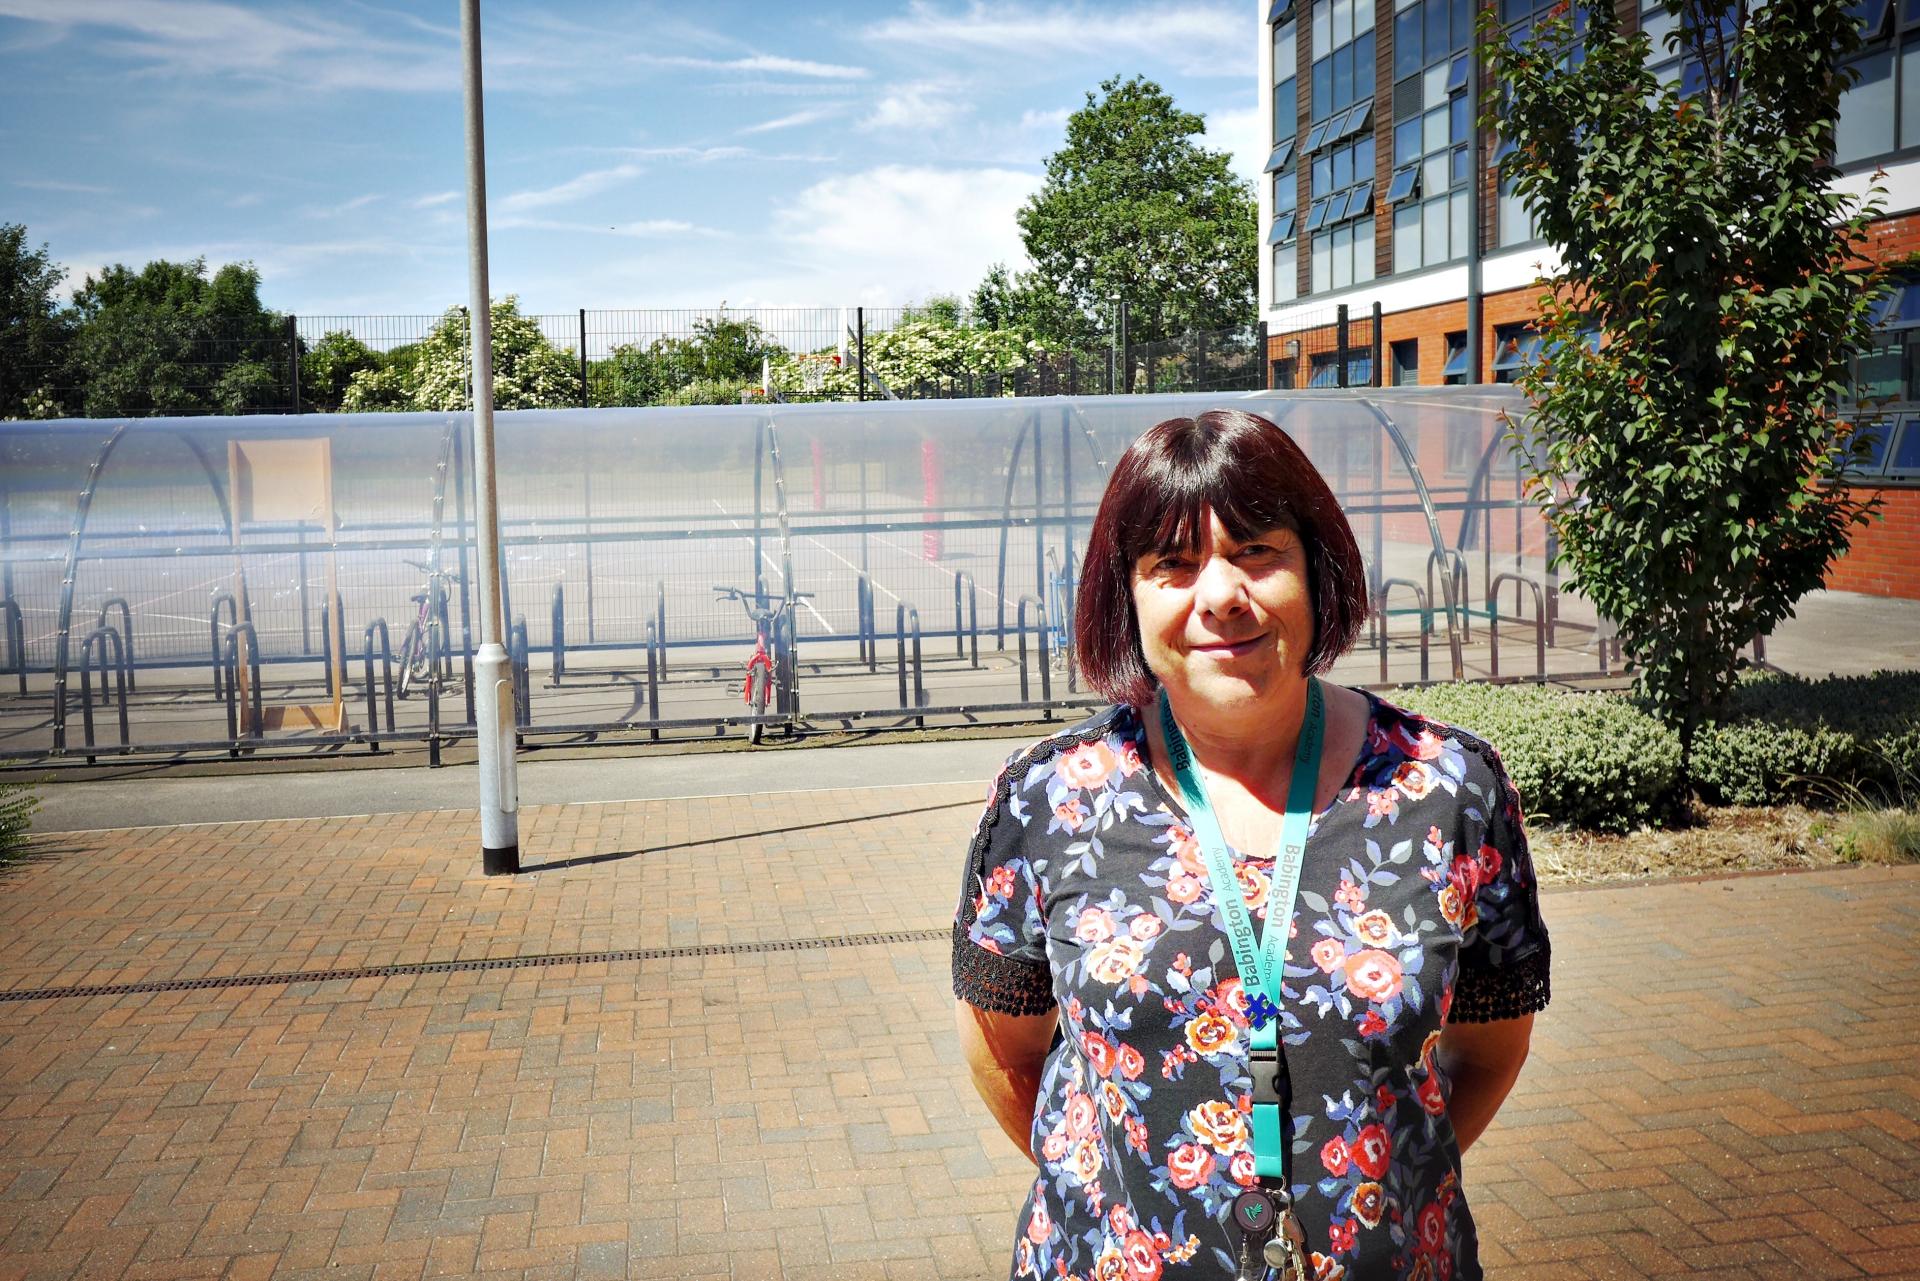 Debbie Harris sprevádza nových žiakov ich prvými dňami v škole Babington v Leicesteri.